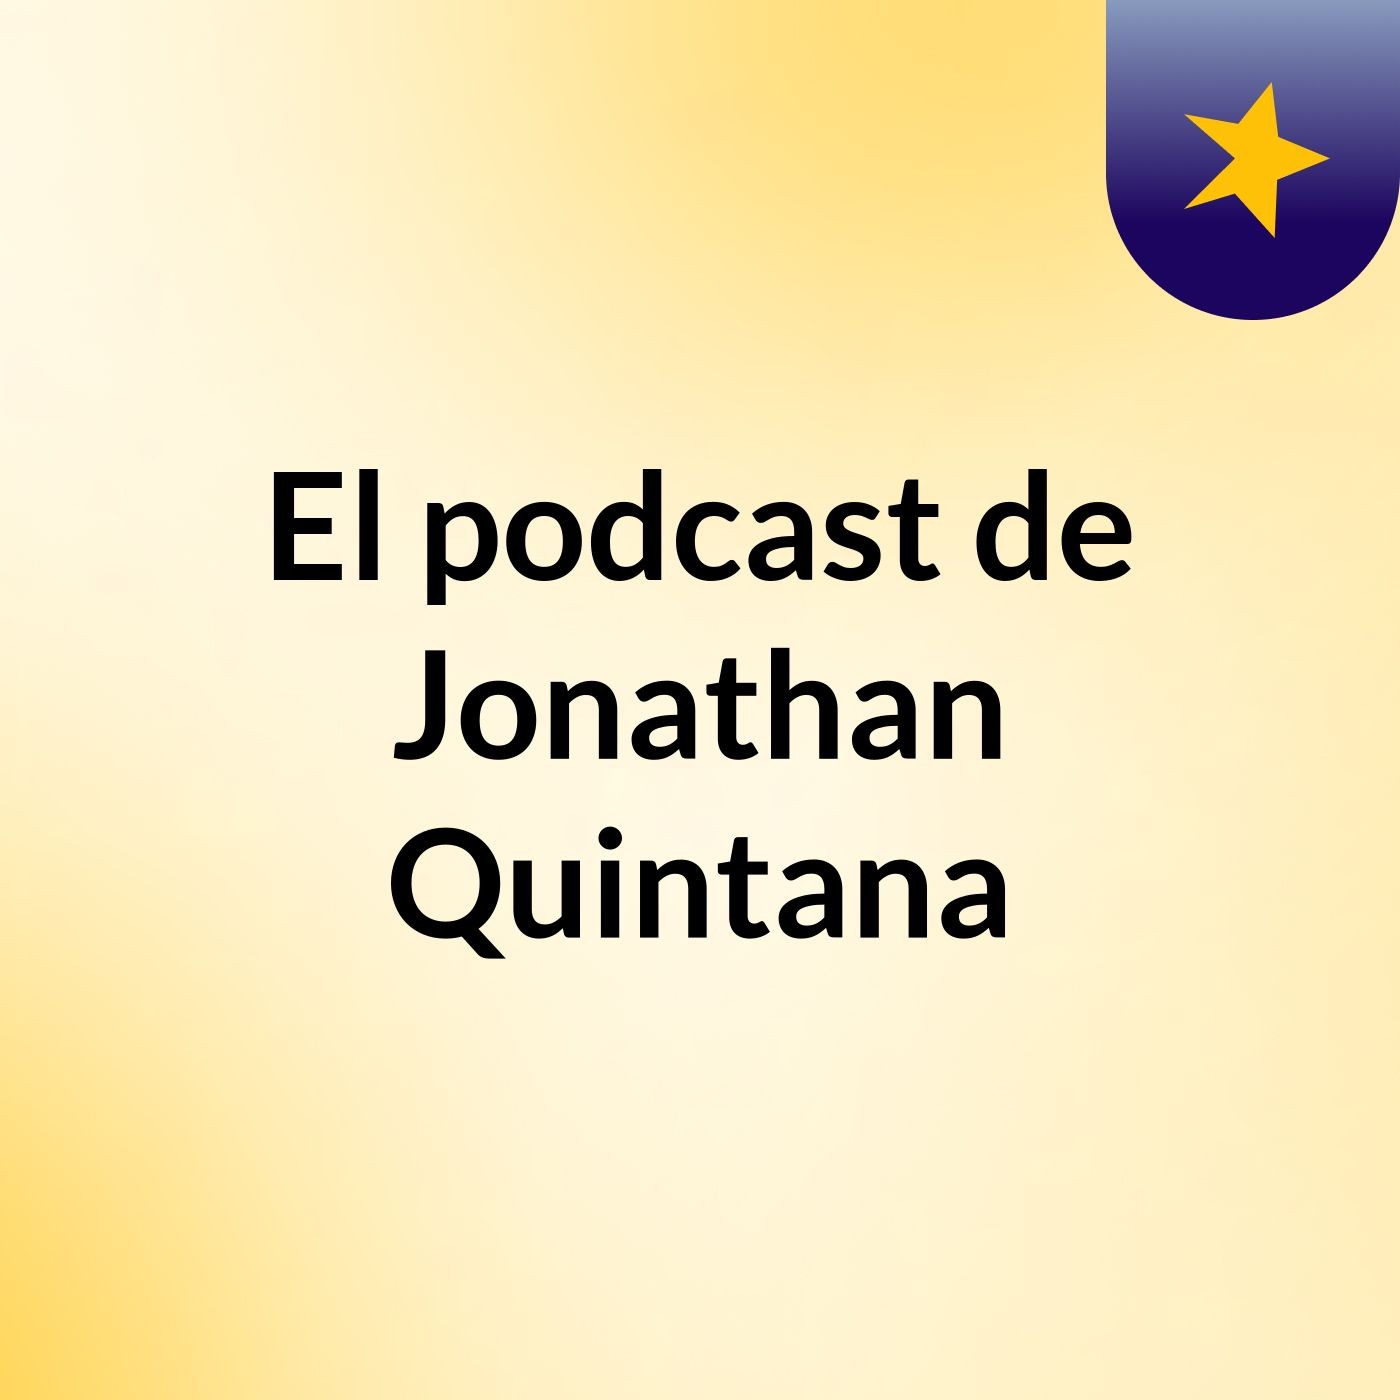 Episodio 2 - El podcast de Jonathan Quintana